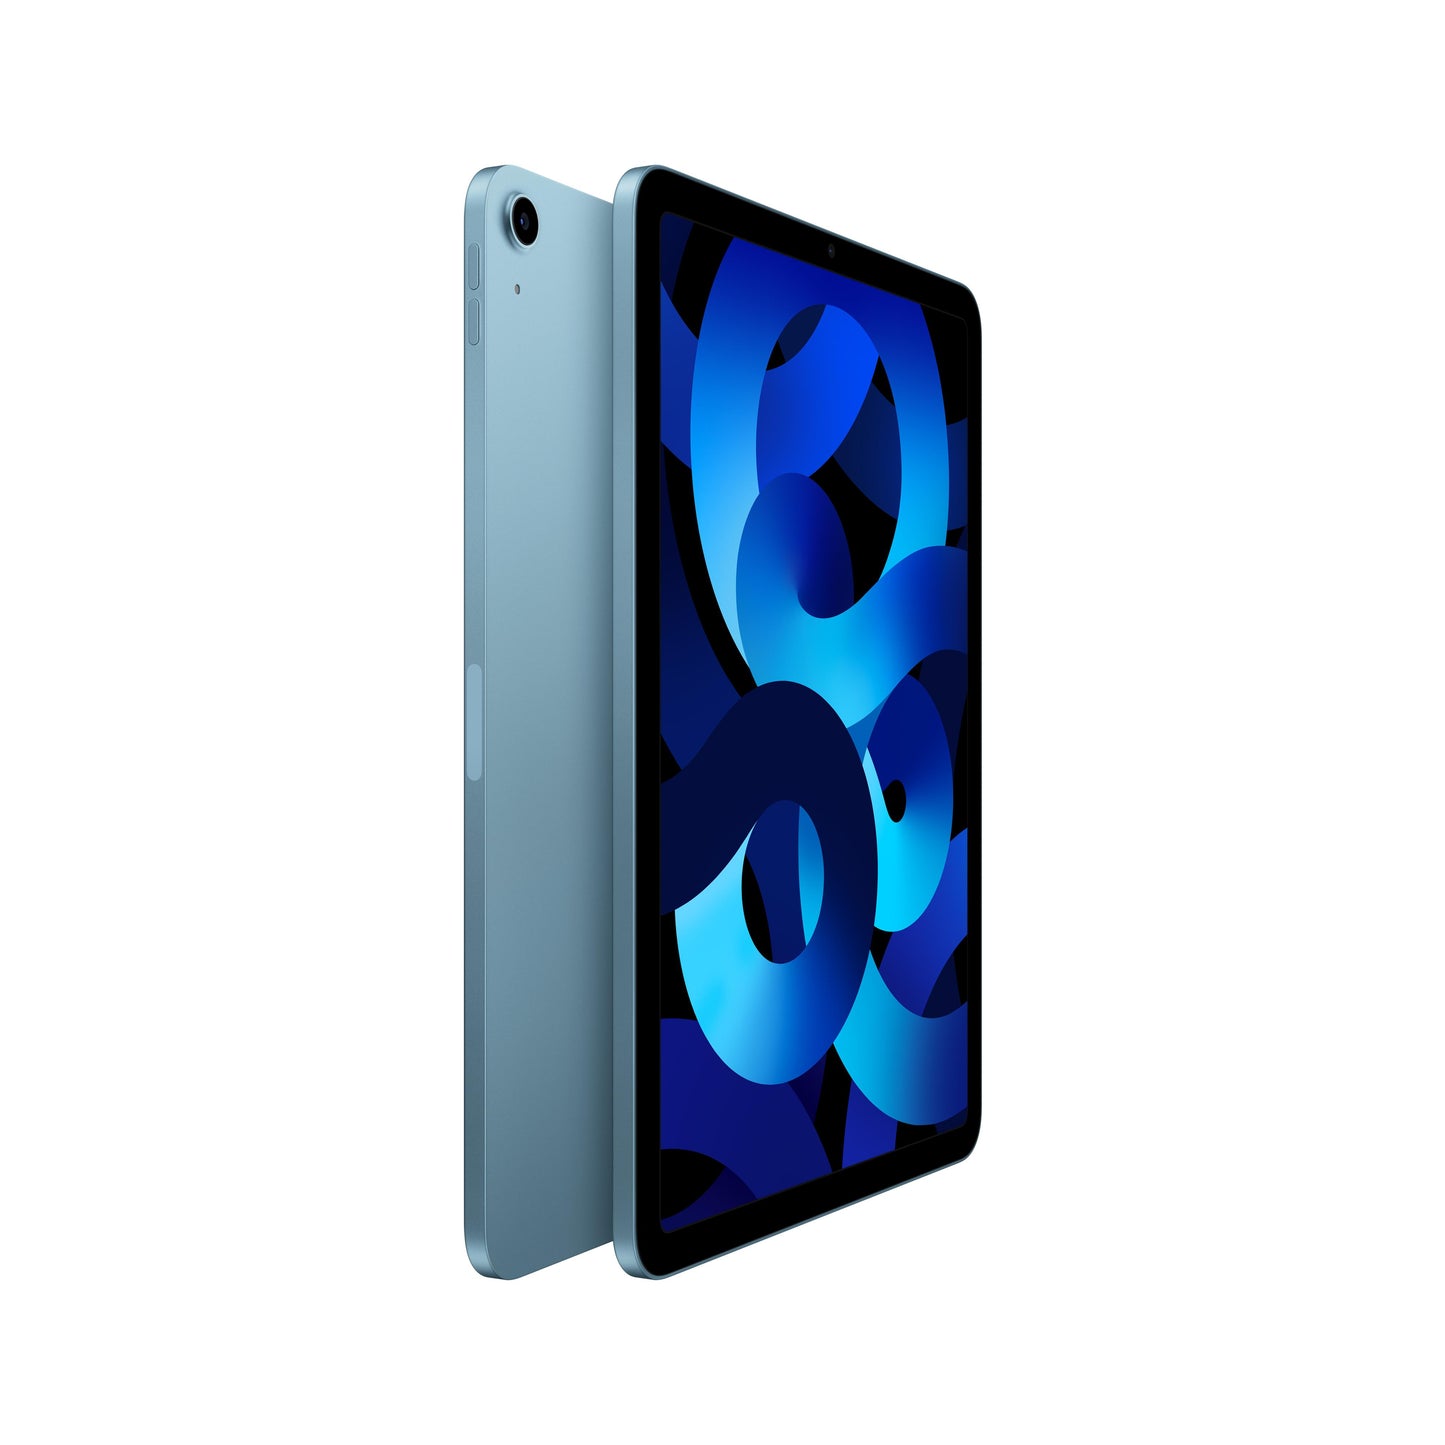 2022 iPad Air Wi-Fi 256GB - Blue (5th generation)